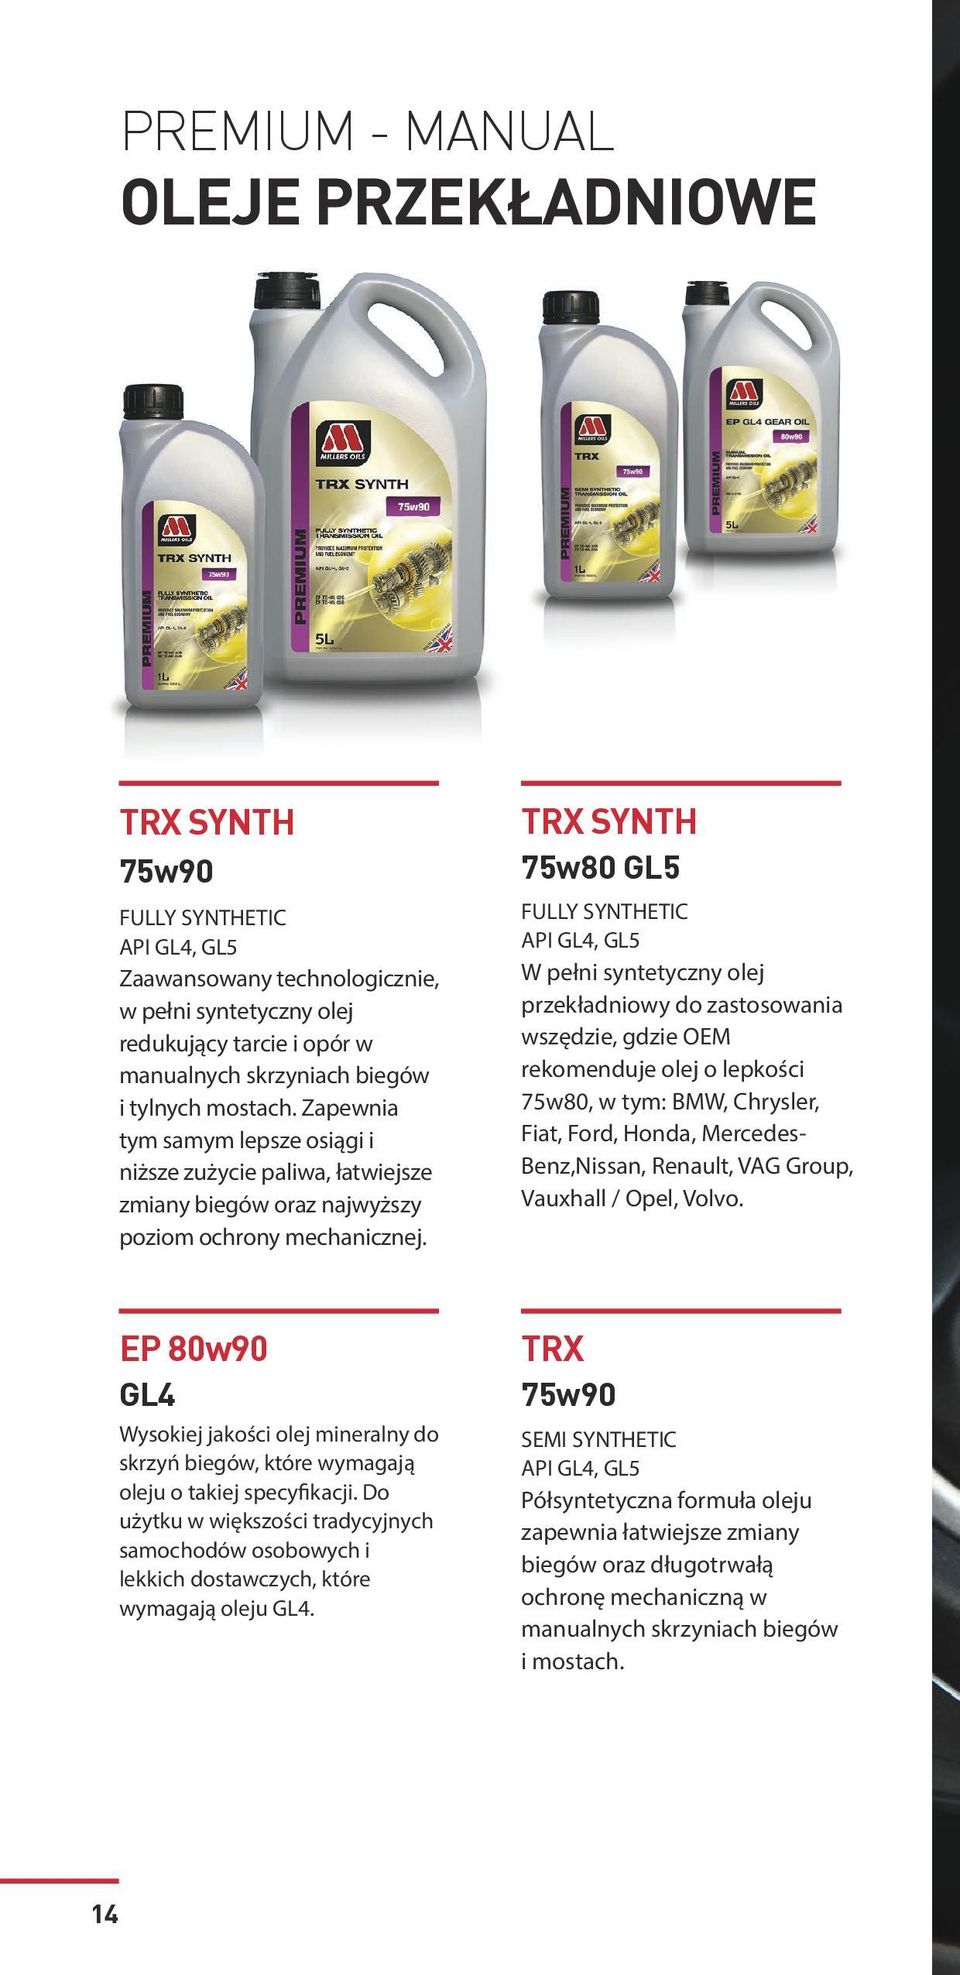 TRX SYNTH 75w80 GL5 API GL4, GL5 W pełni syntetyczny olej przekładniowy do zastosowania wszędzie, gdzie OEM rekomenduje olej o lepkości 75w80, w tym: BMW, Chrysler, Fiat, Ford, Honda, Mercedes-